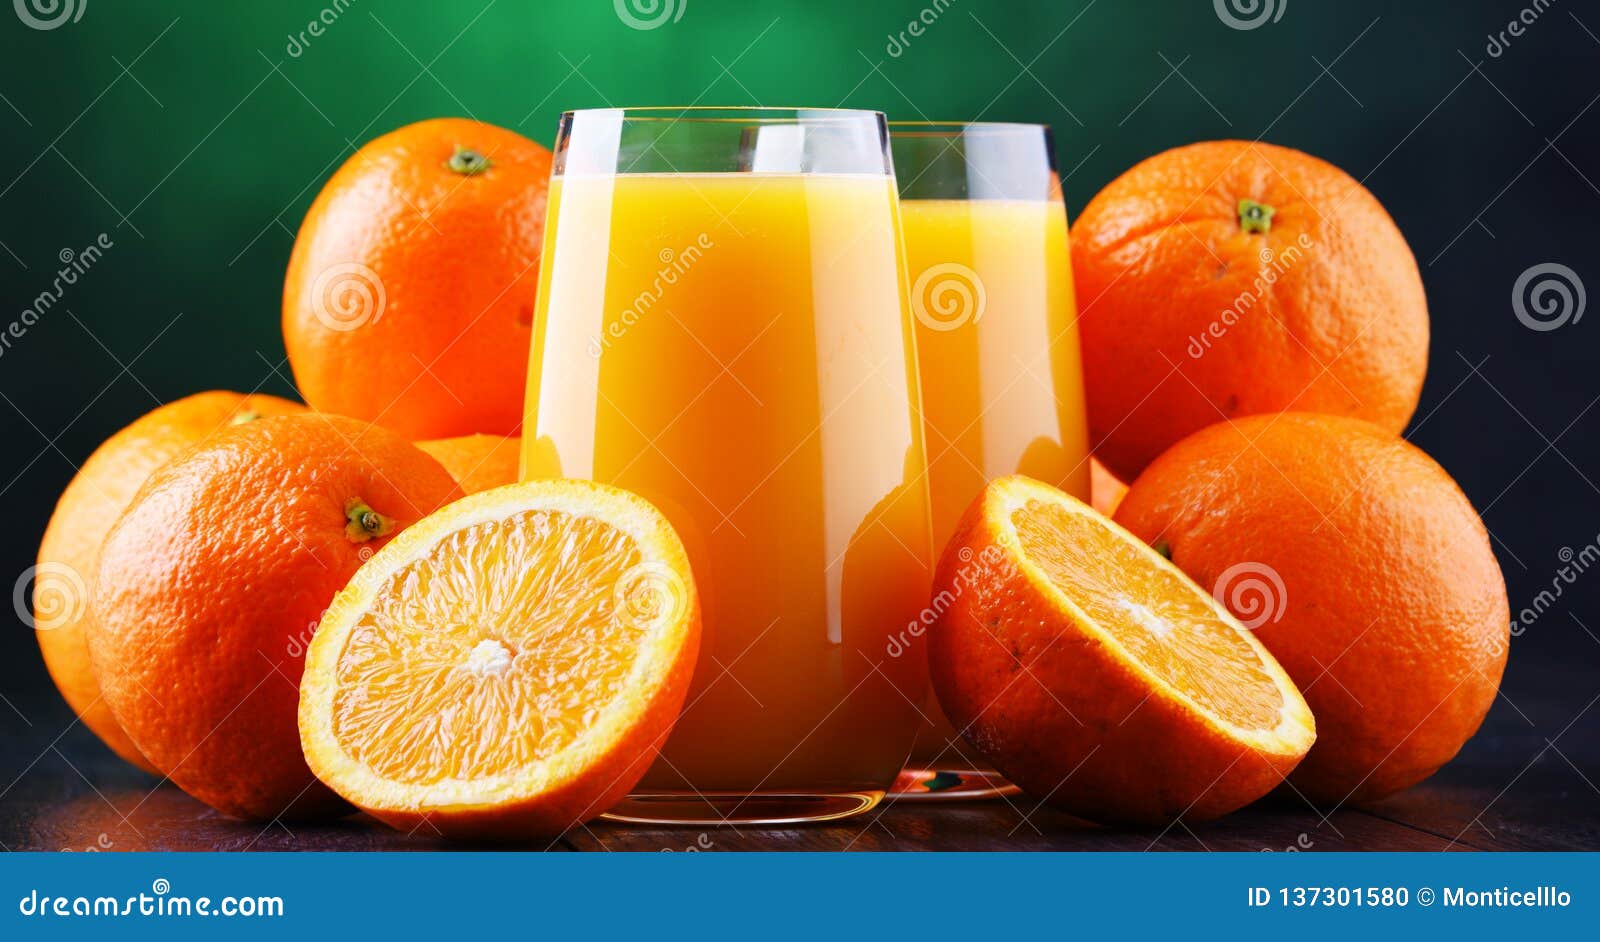 https://thumbs.dreamstime.com/z/glasses-freshly-squeezed-orange-juice-137301580.jpg